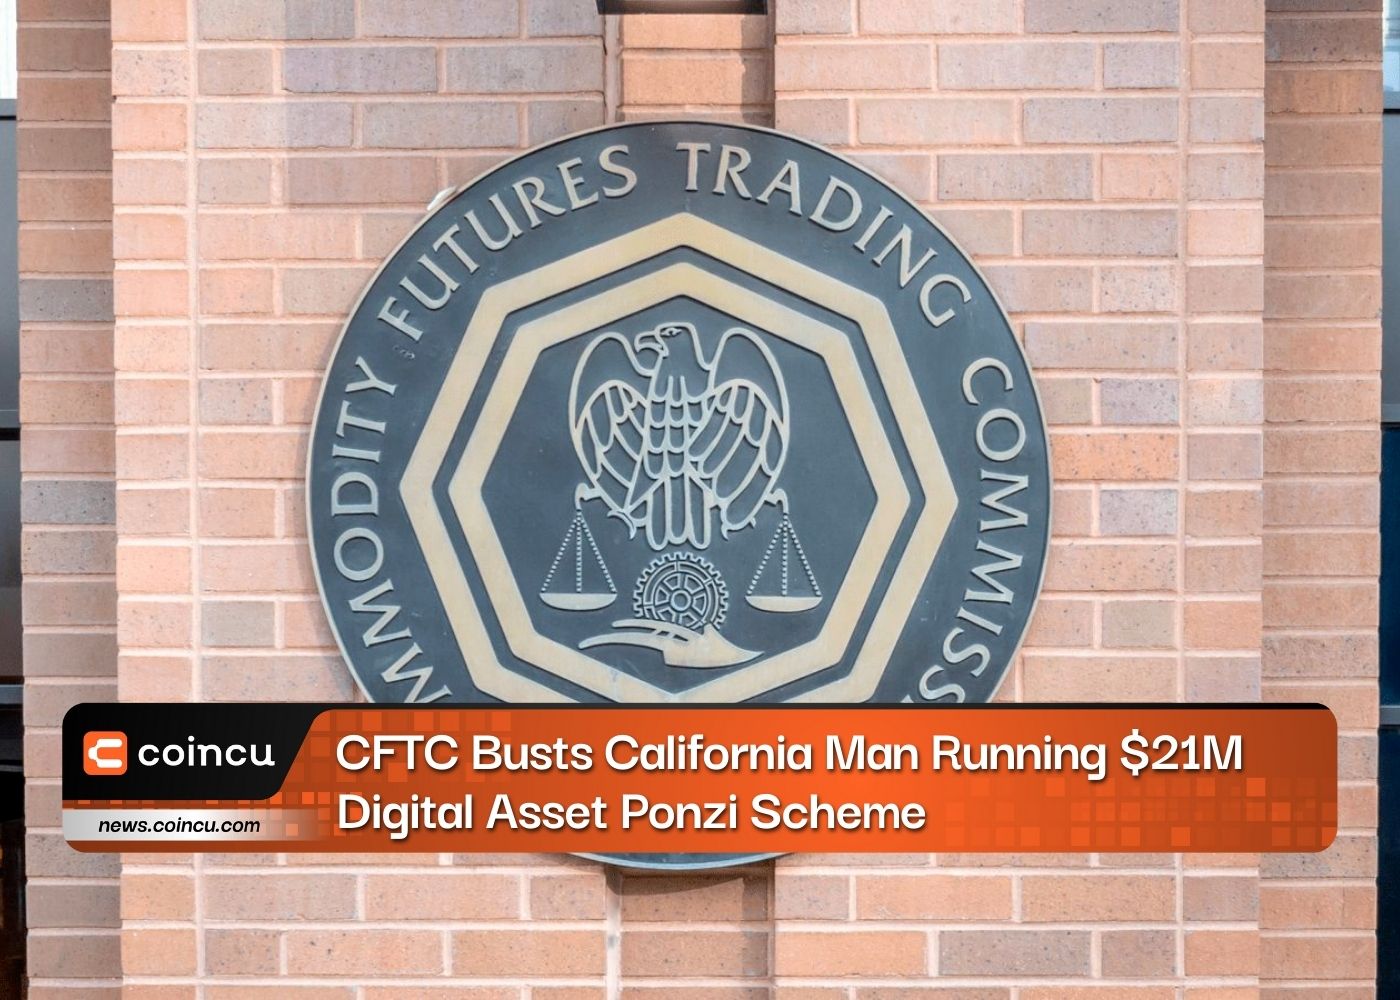 CFTC Busts California Man Running $21M Digital Asset Ponzi Scheme